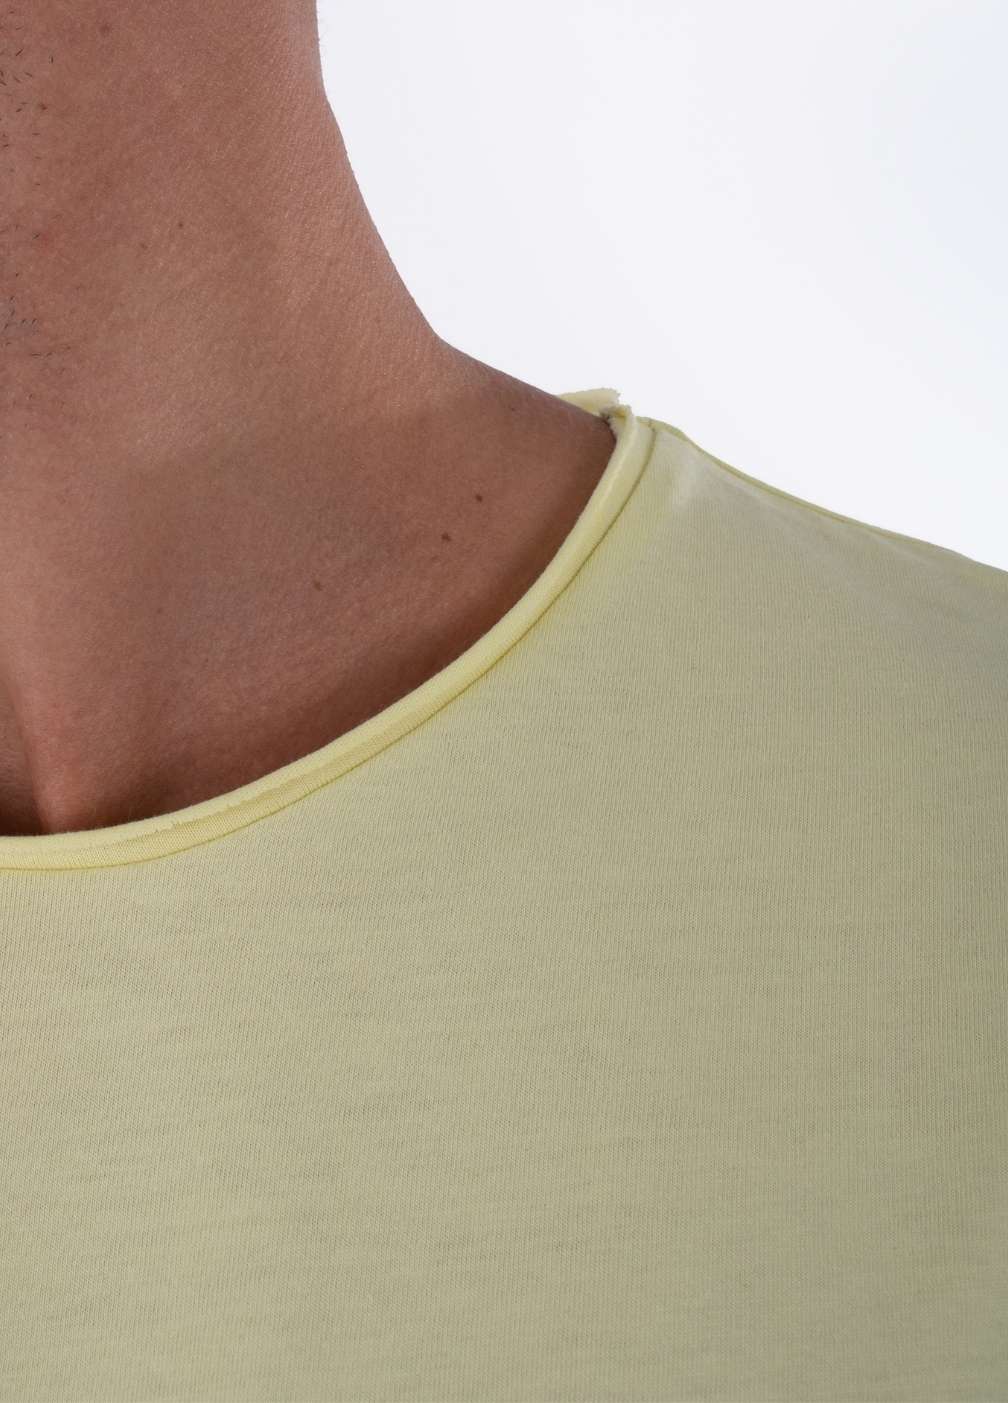 LEMON GRASS T-SHIRT PRINT closeup - image of shirt collar - 100% organic cotton t shirts